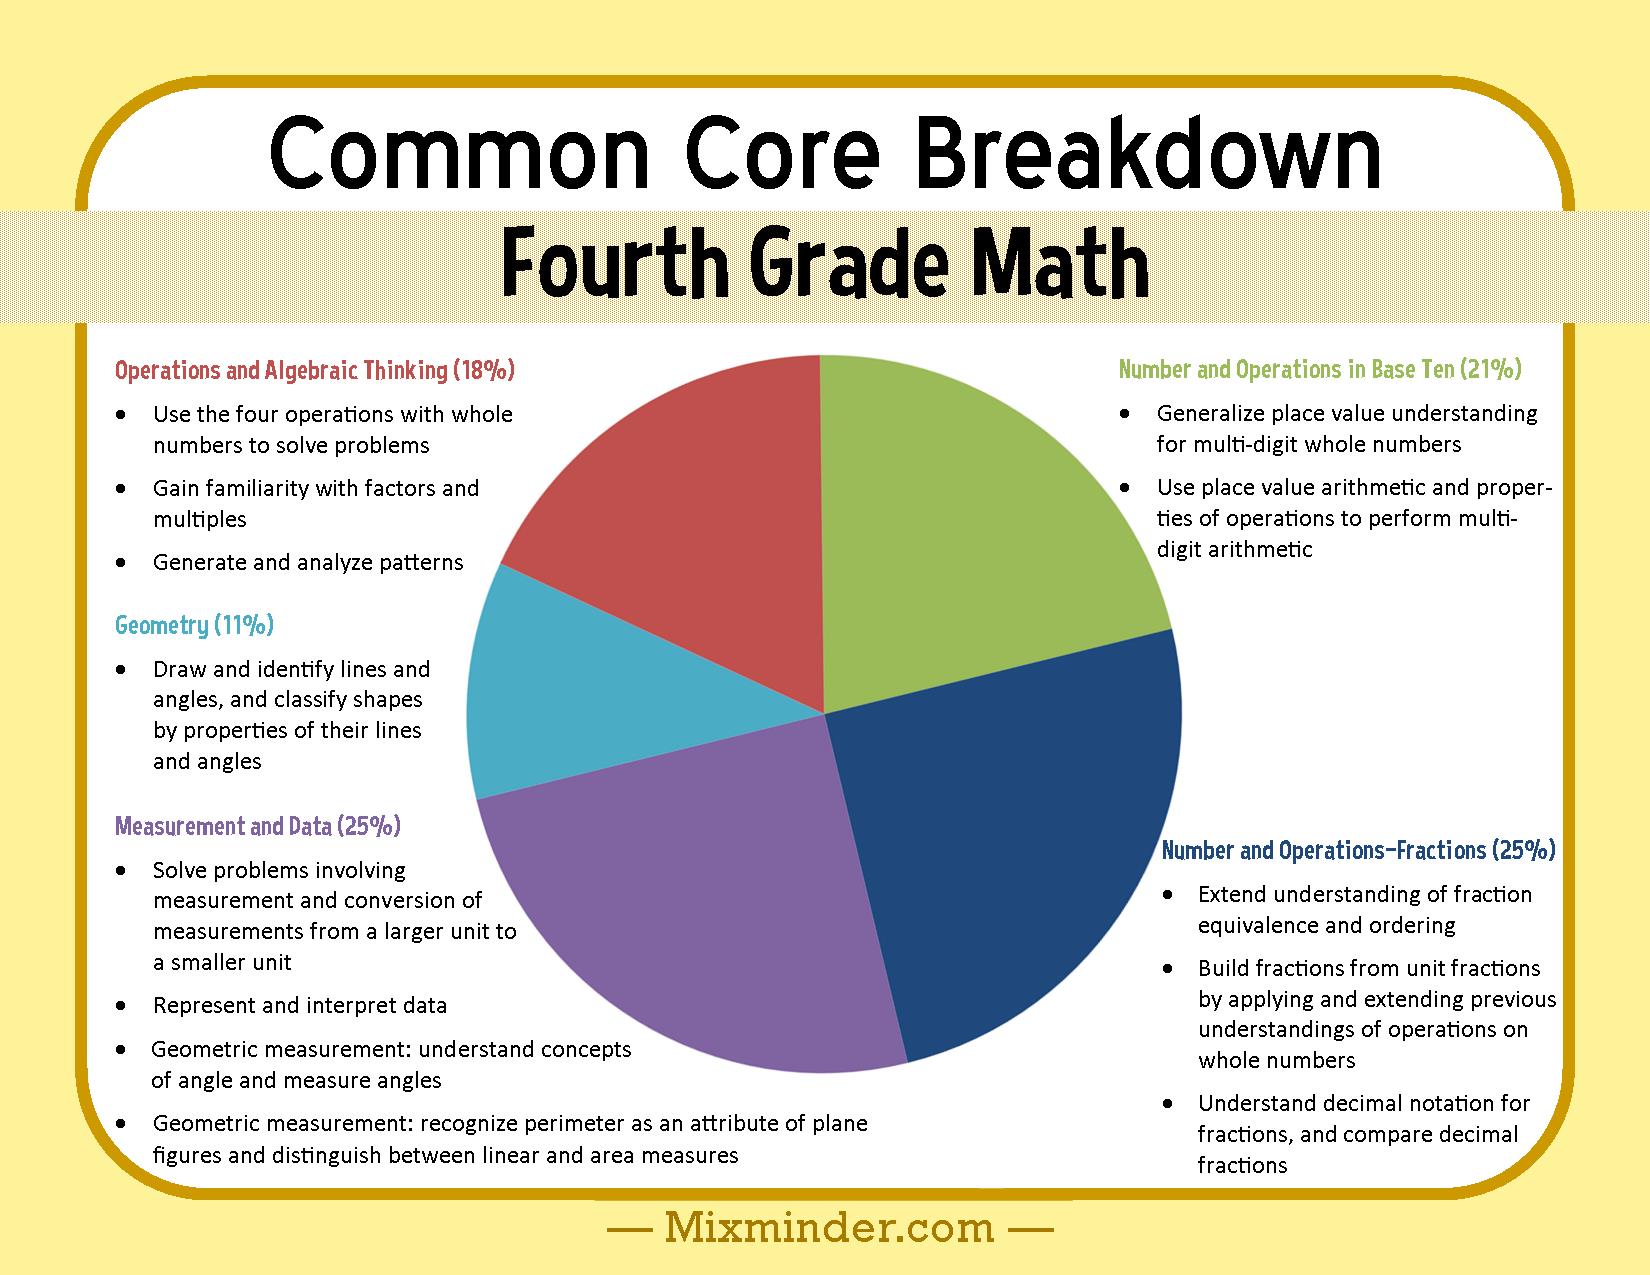 Fourth Grade Math Common Core Breakdown